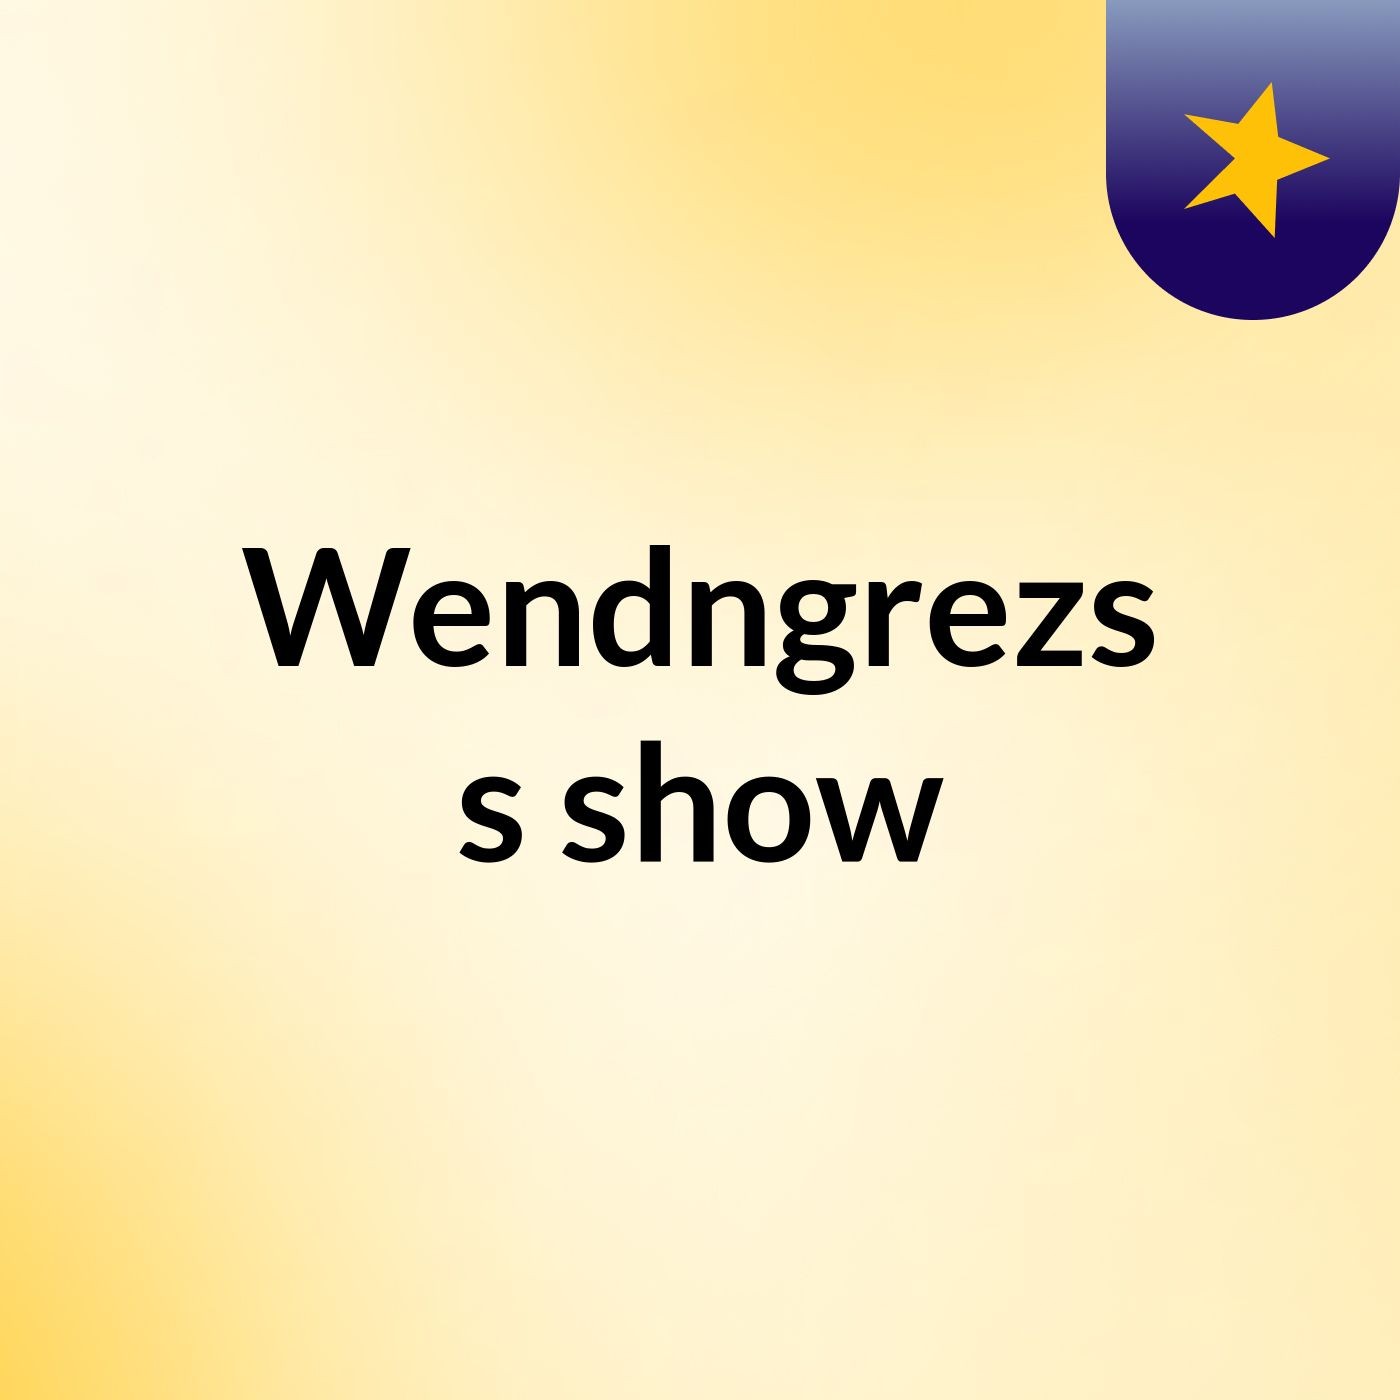 Wendngrezs's show